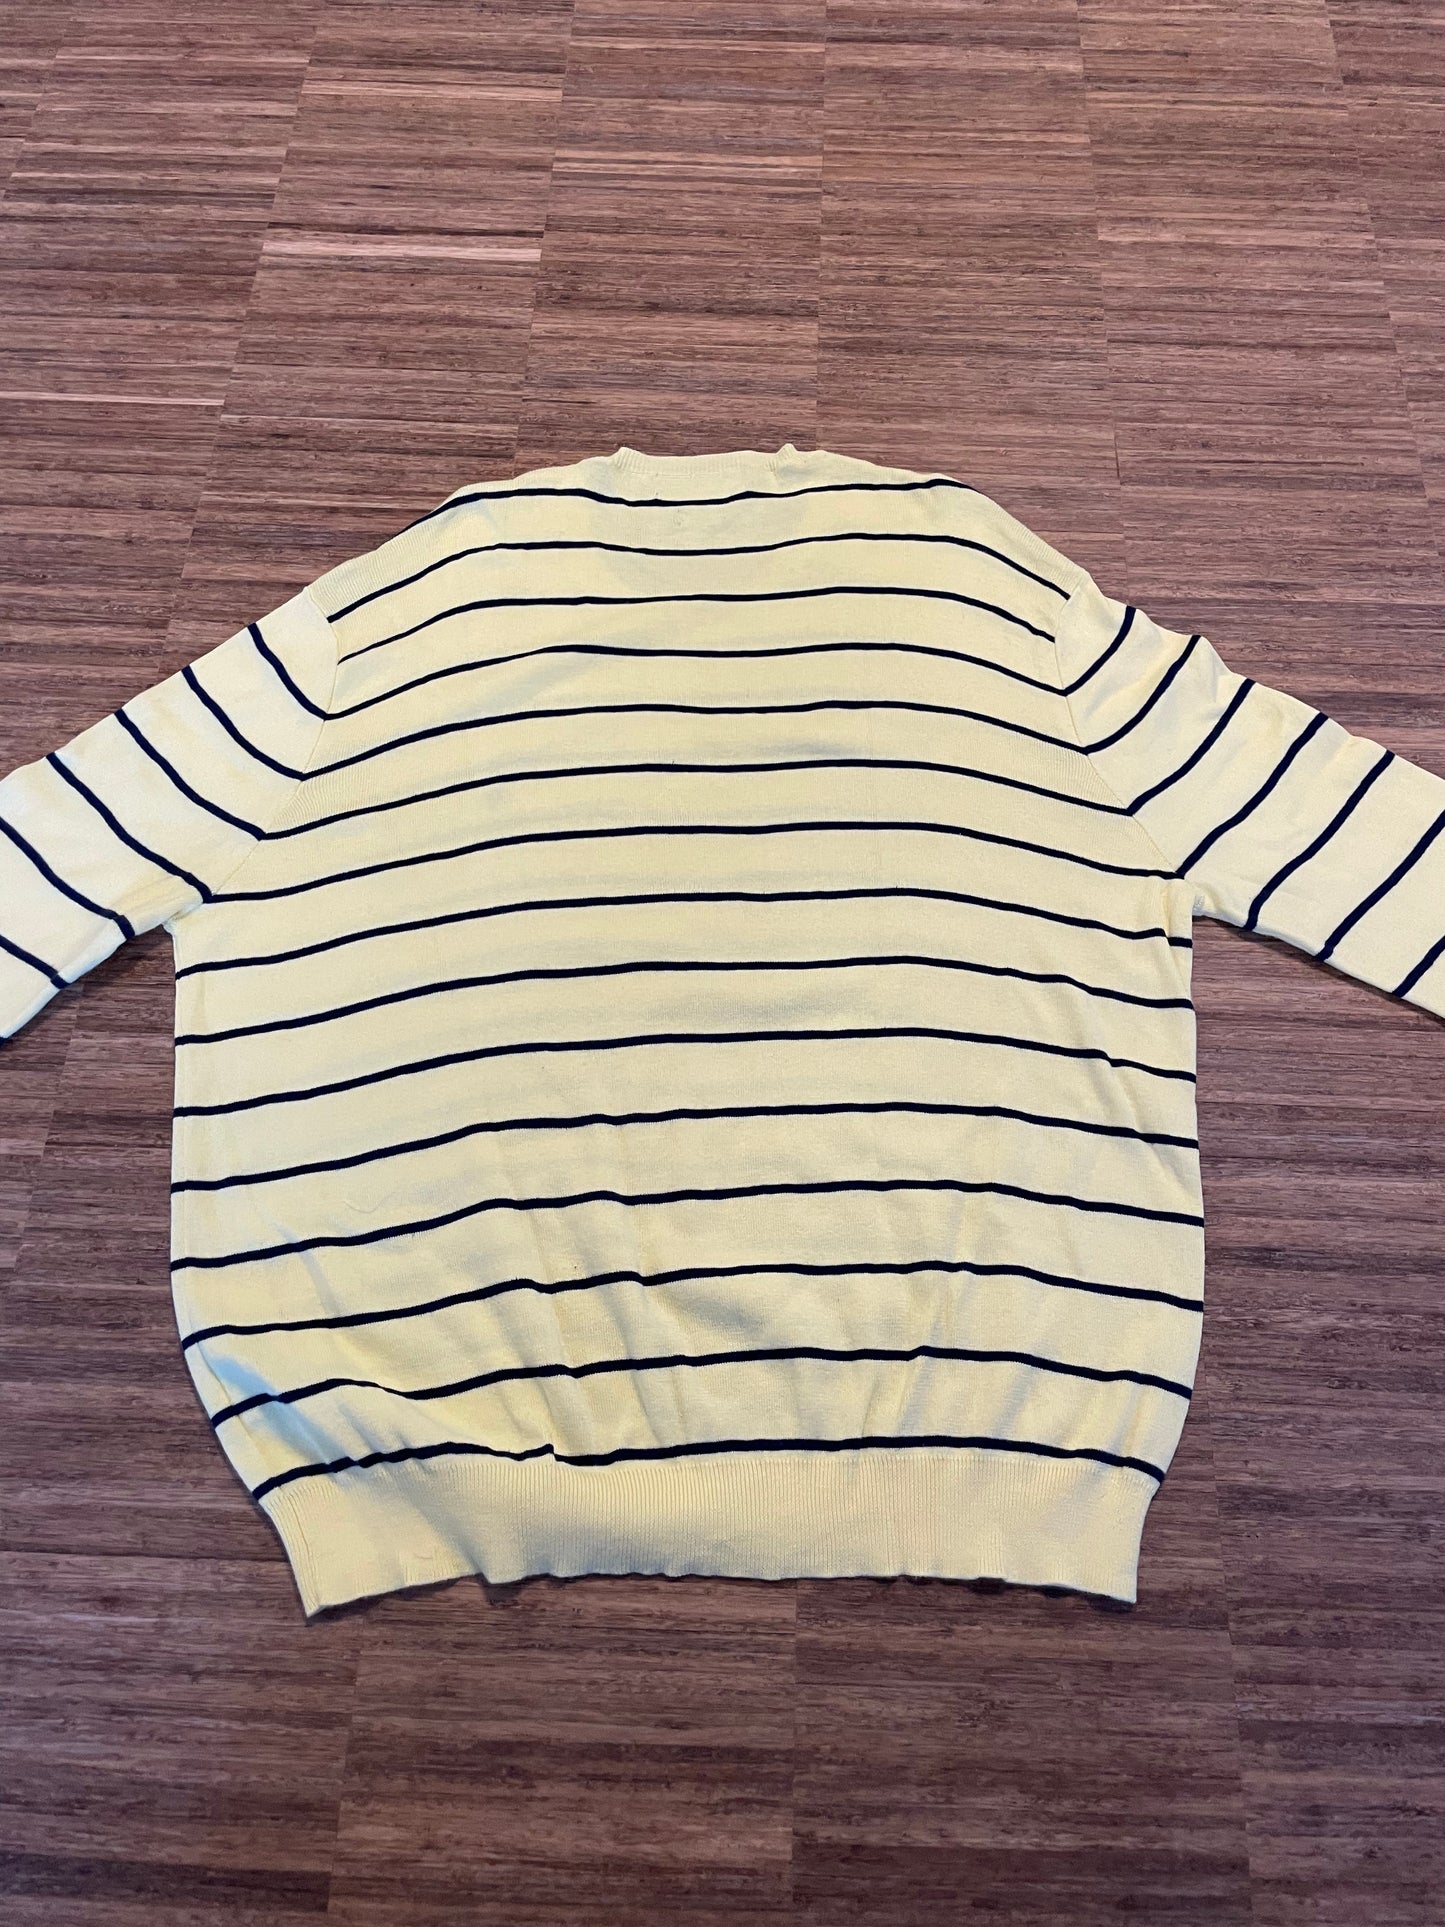 Polo Ralph Lauren Sweater (L)